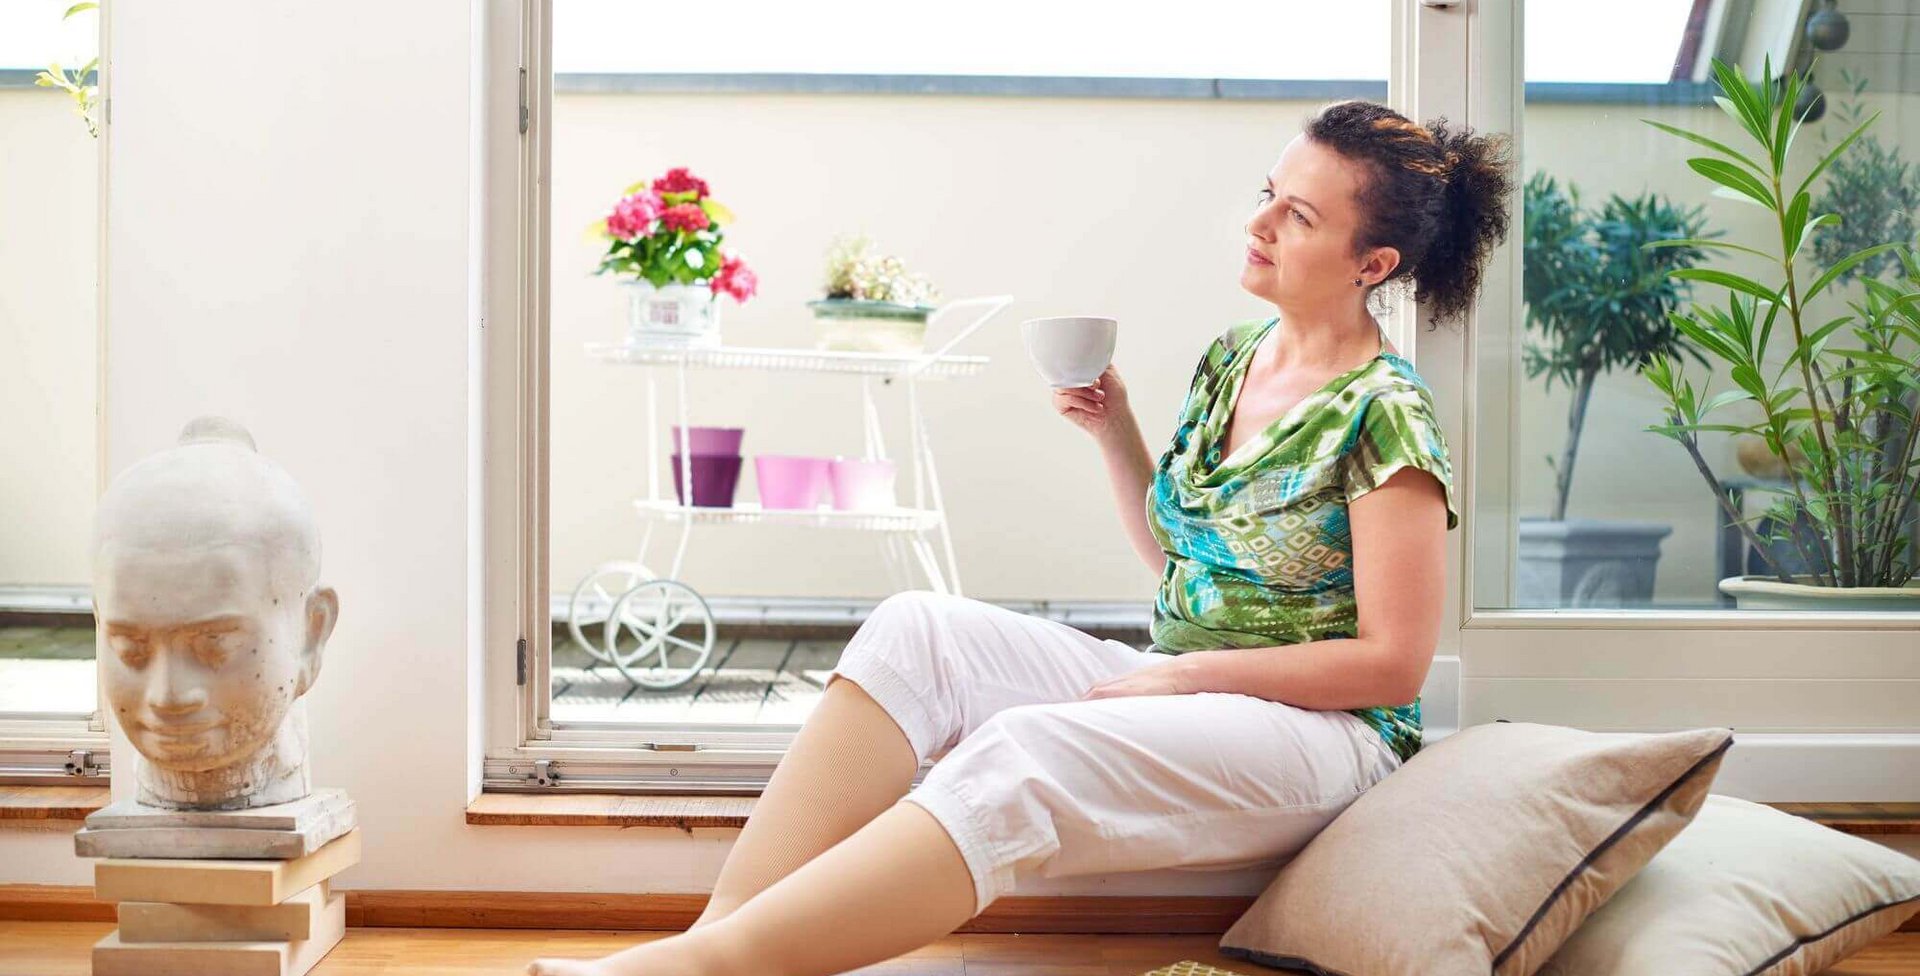 Eine Frau sitzt, an Kissen angelehnt, auf dem Fußboden in einem Wohnzimmer und trinkt genüsslich eine Tasse Kaffee. Sie trägt eine VenoTrain curaflow Beinversorgung von Bauerfeind. Dies ist ein Kompressionsstrumpf zur gezielten Ödemtherapie am Bein.